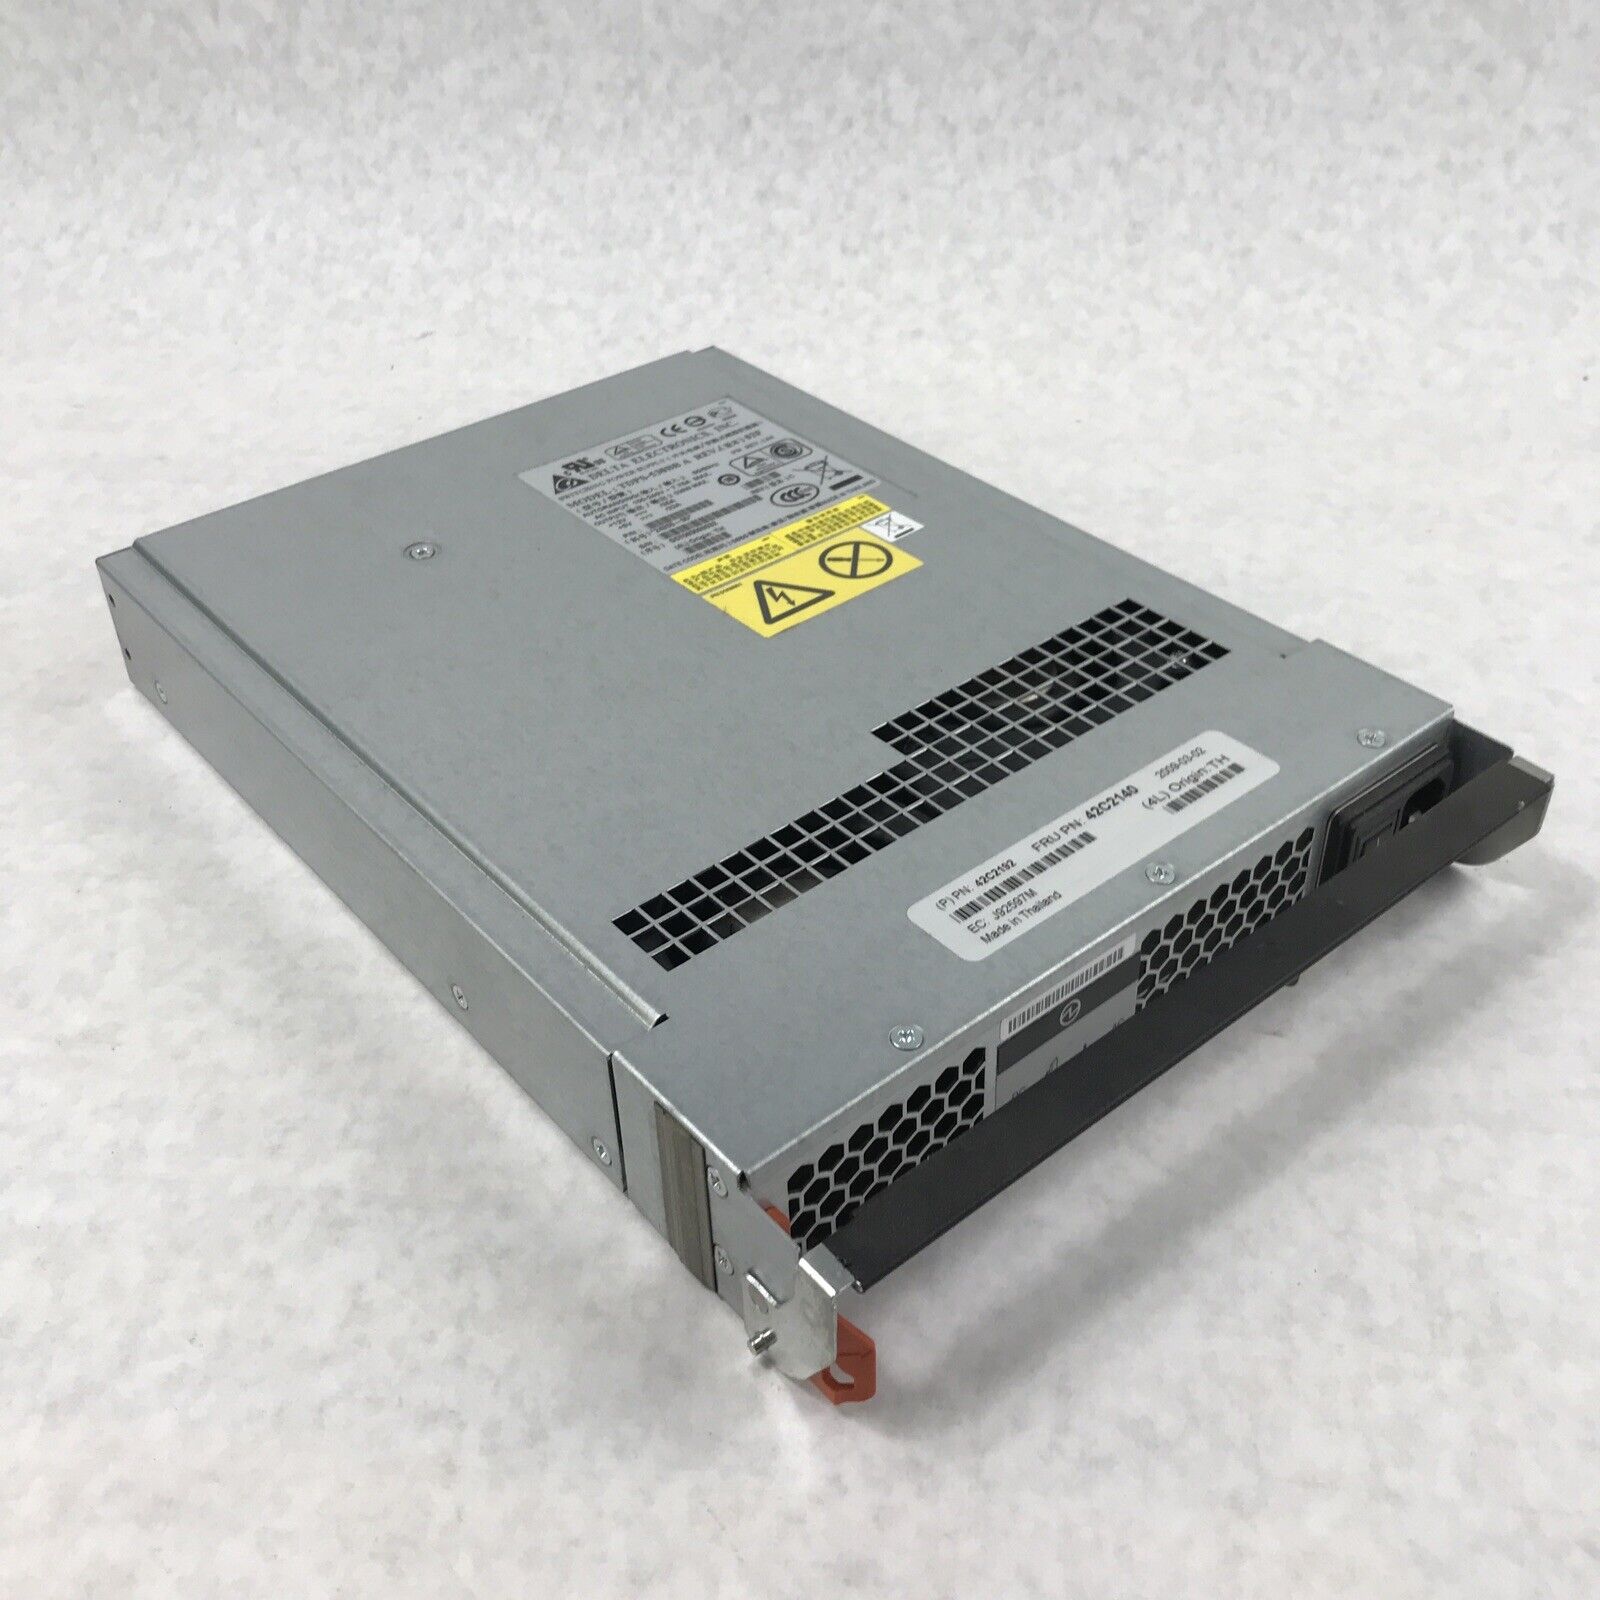 IBM Delta TDPS-530BB A Autoranging 530W DS3000 Server Power Supply 24355-00